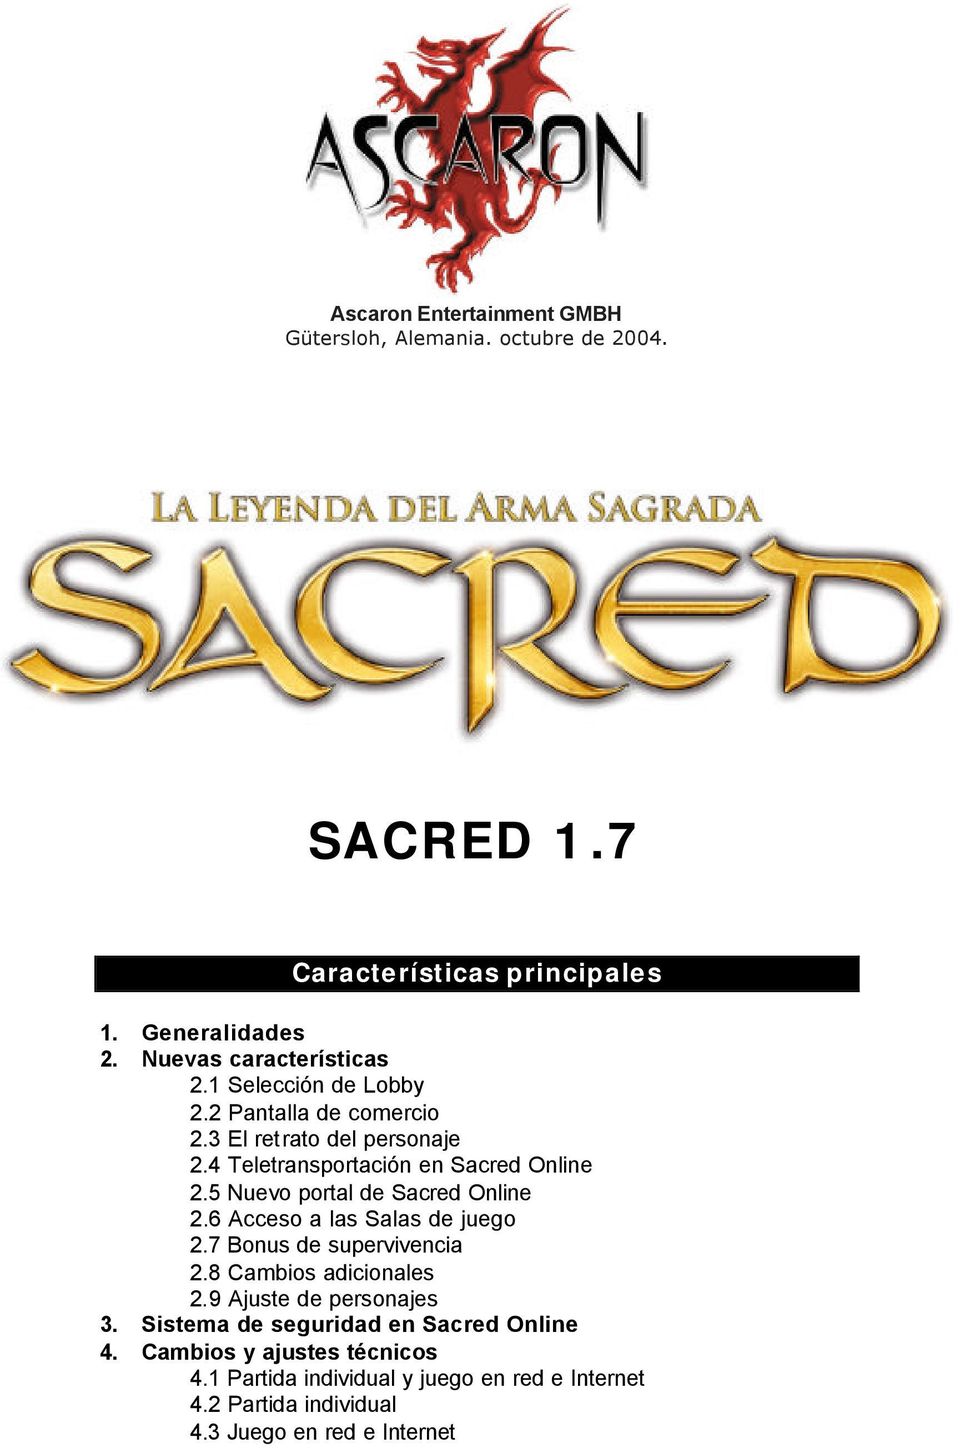 5 Nuevo portal de Sacred Online 2.6 Acceso a las Salas de juego 2.7 Bonus de supervivencia 2.8 Cambios adicionales 2.9 Ajuste de personajes 3.